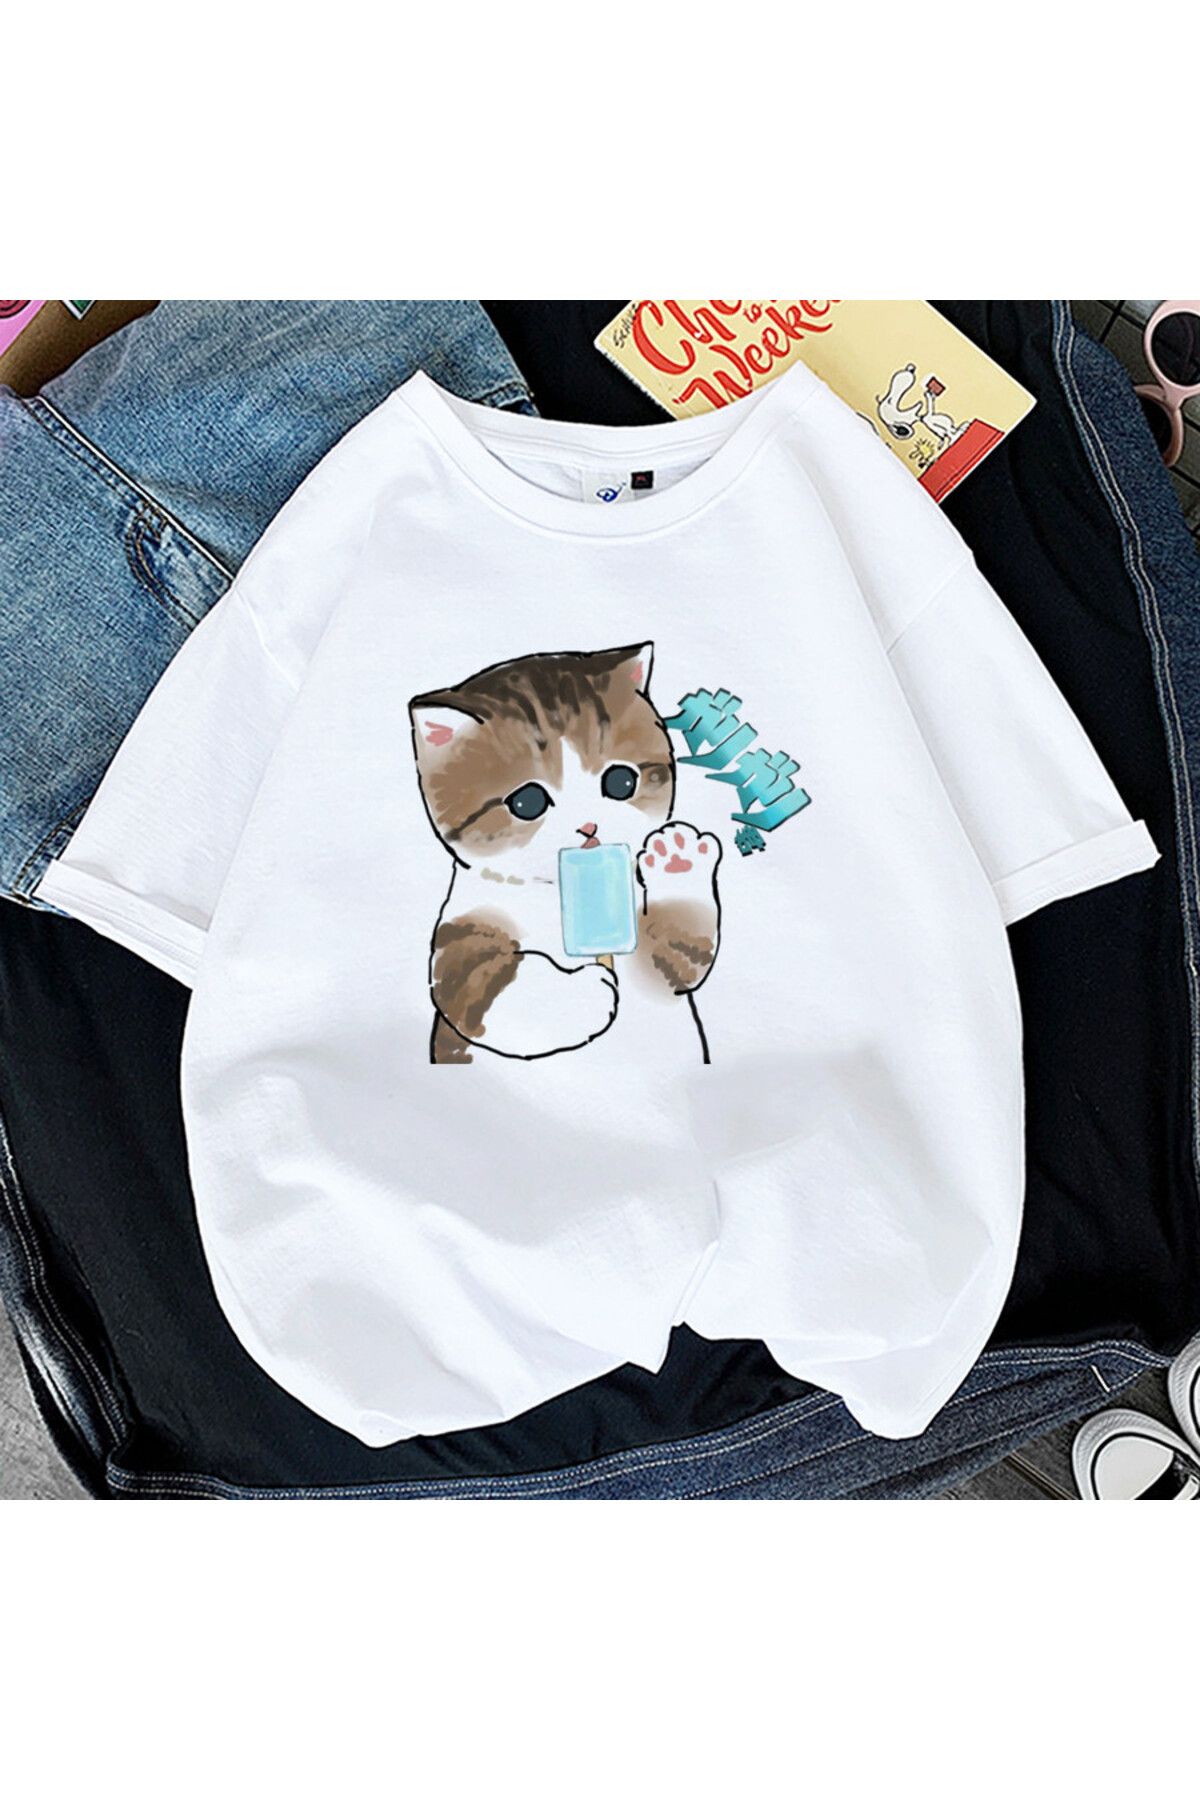 GALASHOP Kedi Kadın baskı komik tişört Model89